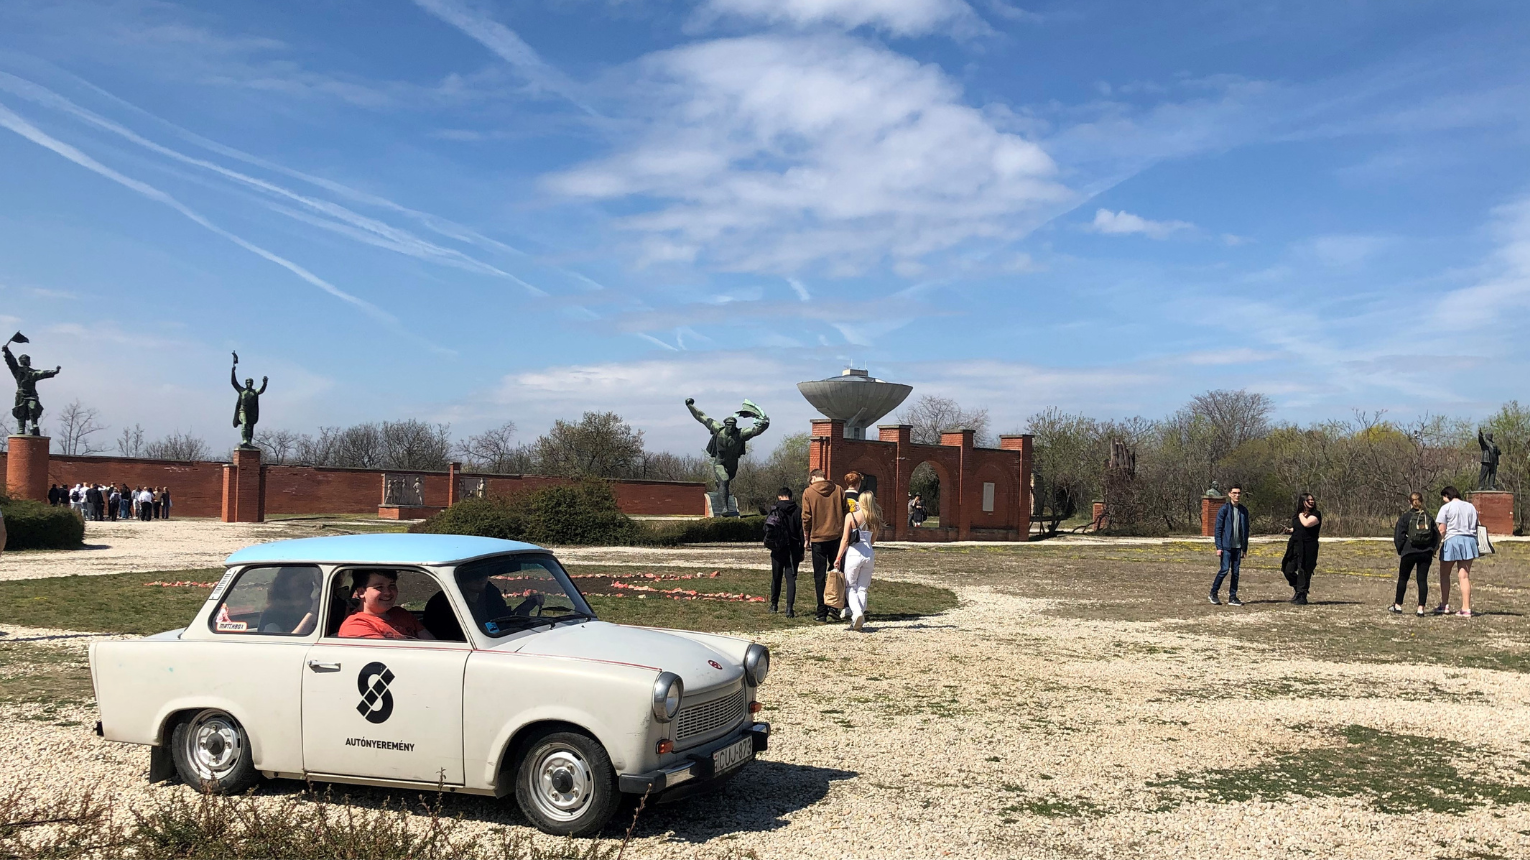 Pöfögés - Sétaautókázás a Memento Park szobrai között